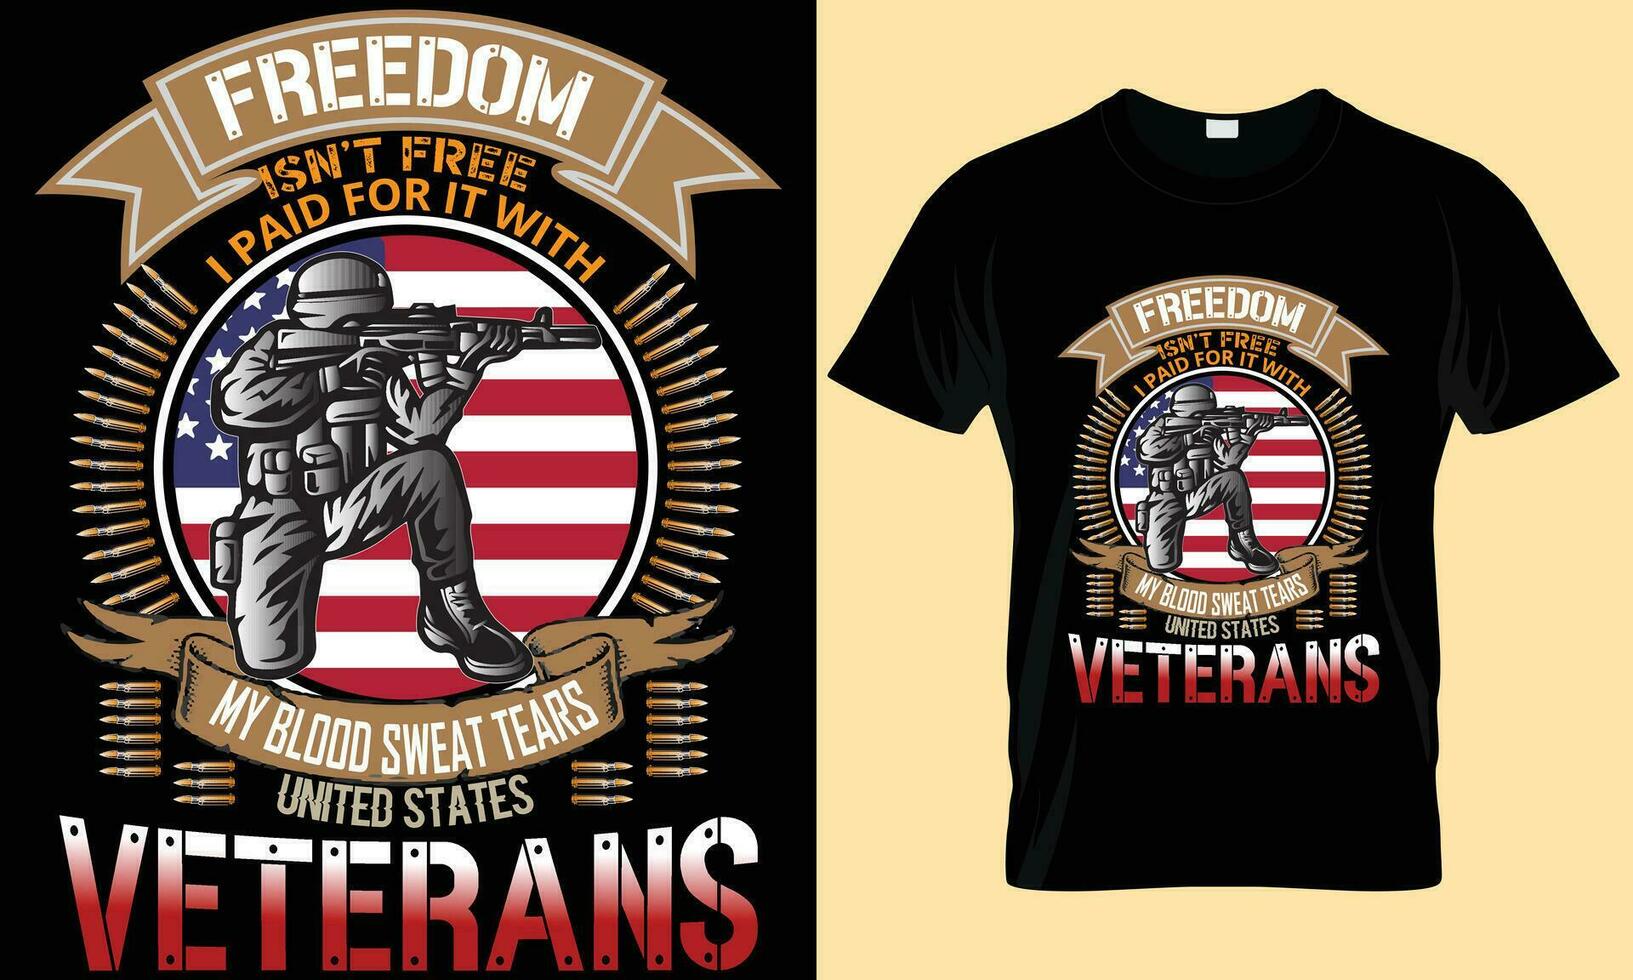 veteraan t overhemd ontwerp, veteraan typografie premie vector t overhemd ontwerp sjabloon, vrijheid vechter, Amerikaans veteraan, soldaten, leger t shirt.